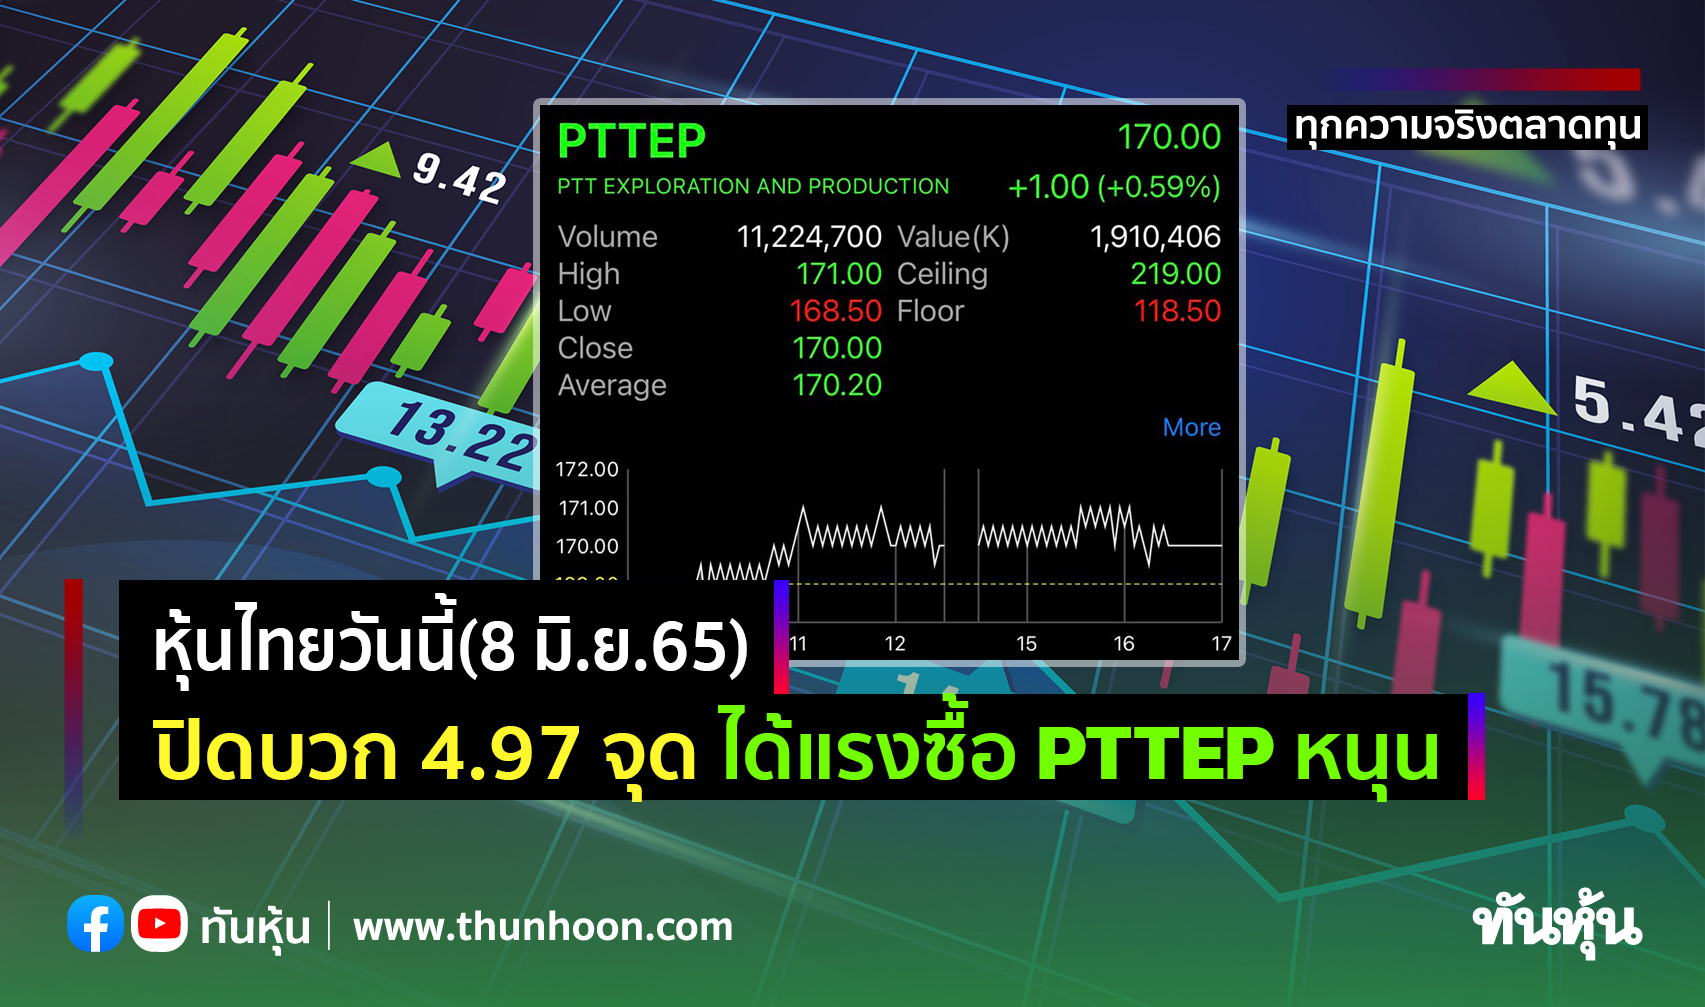 หุ้นไทยวันนี้(8 มิ.ย.65) ปิดบวก 4.97 จุด ได้แรงซื้อ Pttep หนุน - Thunhoon